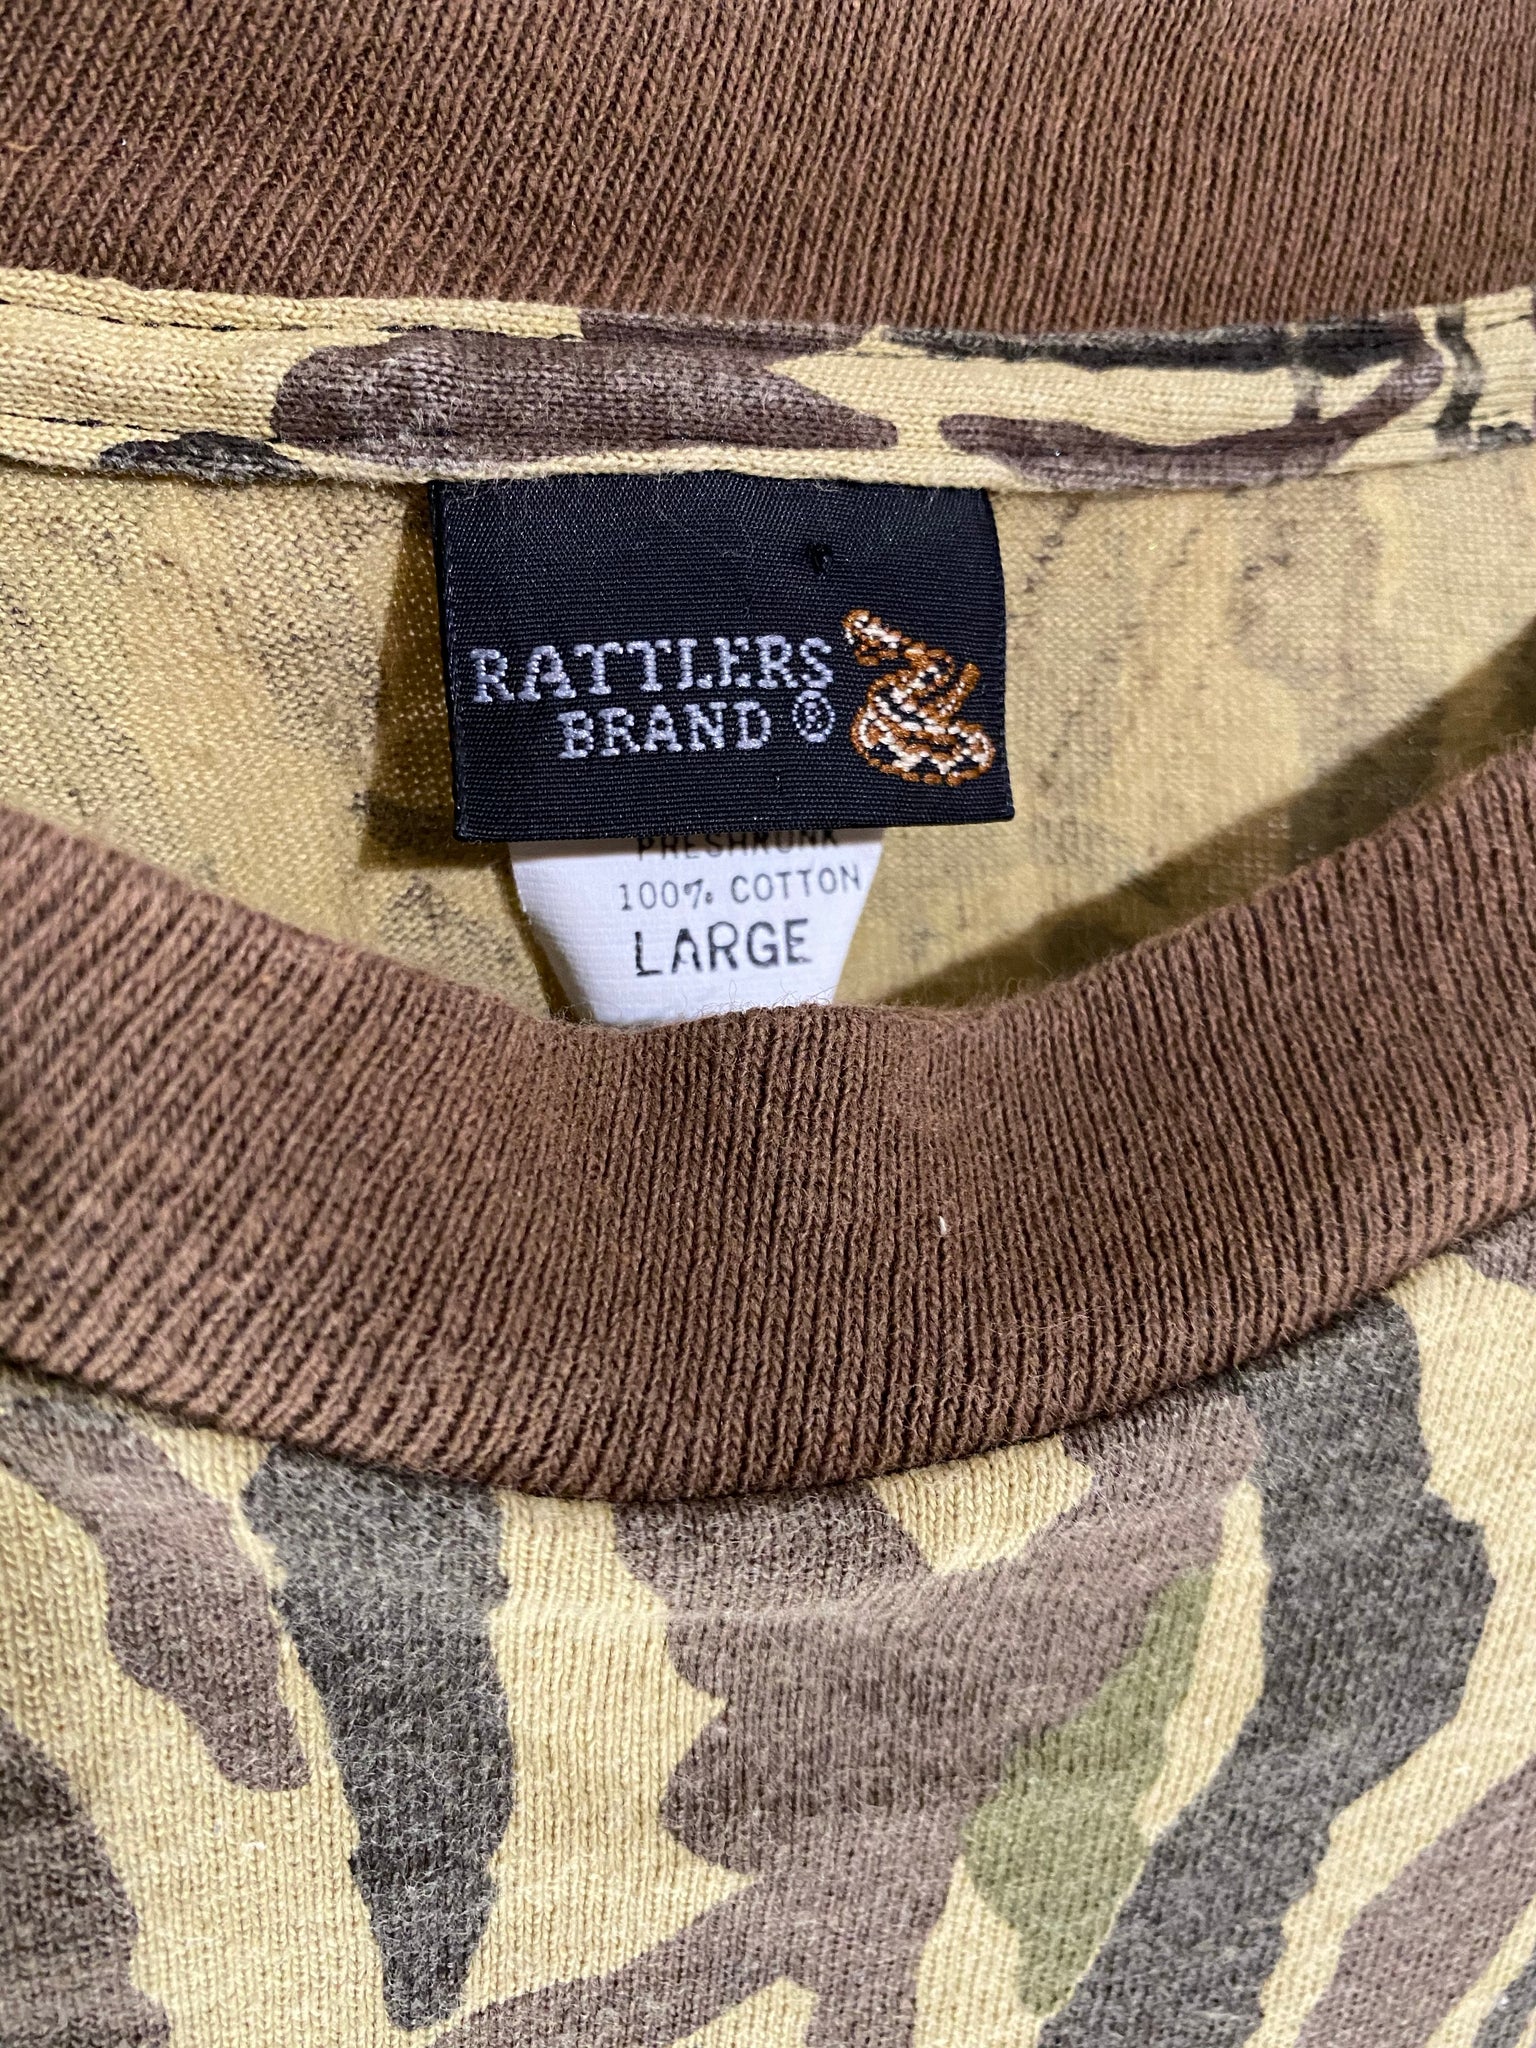 Vintage Rattler's Brand Ducks Unlimited Jacket USA MADE (L)